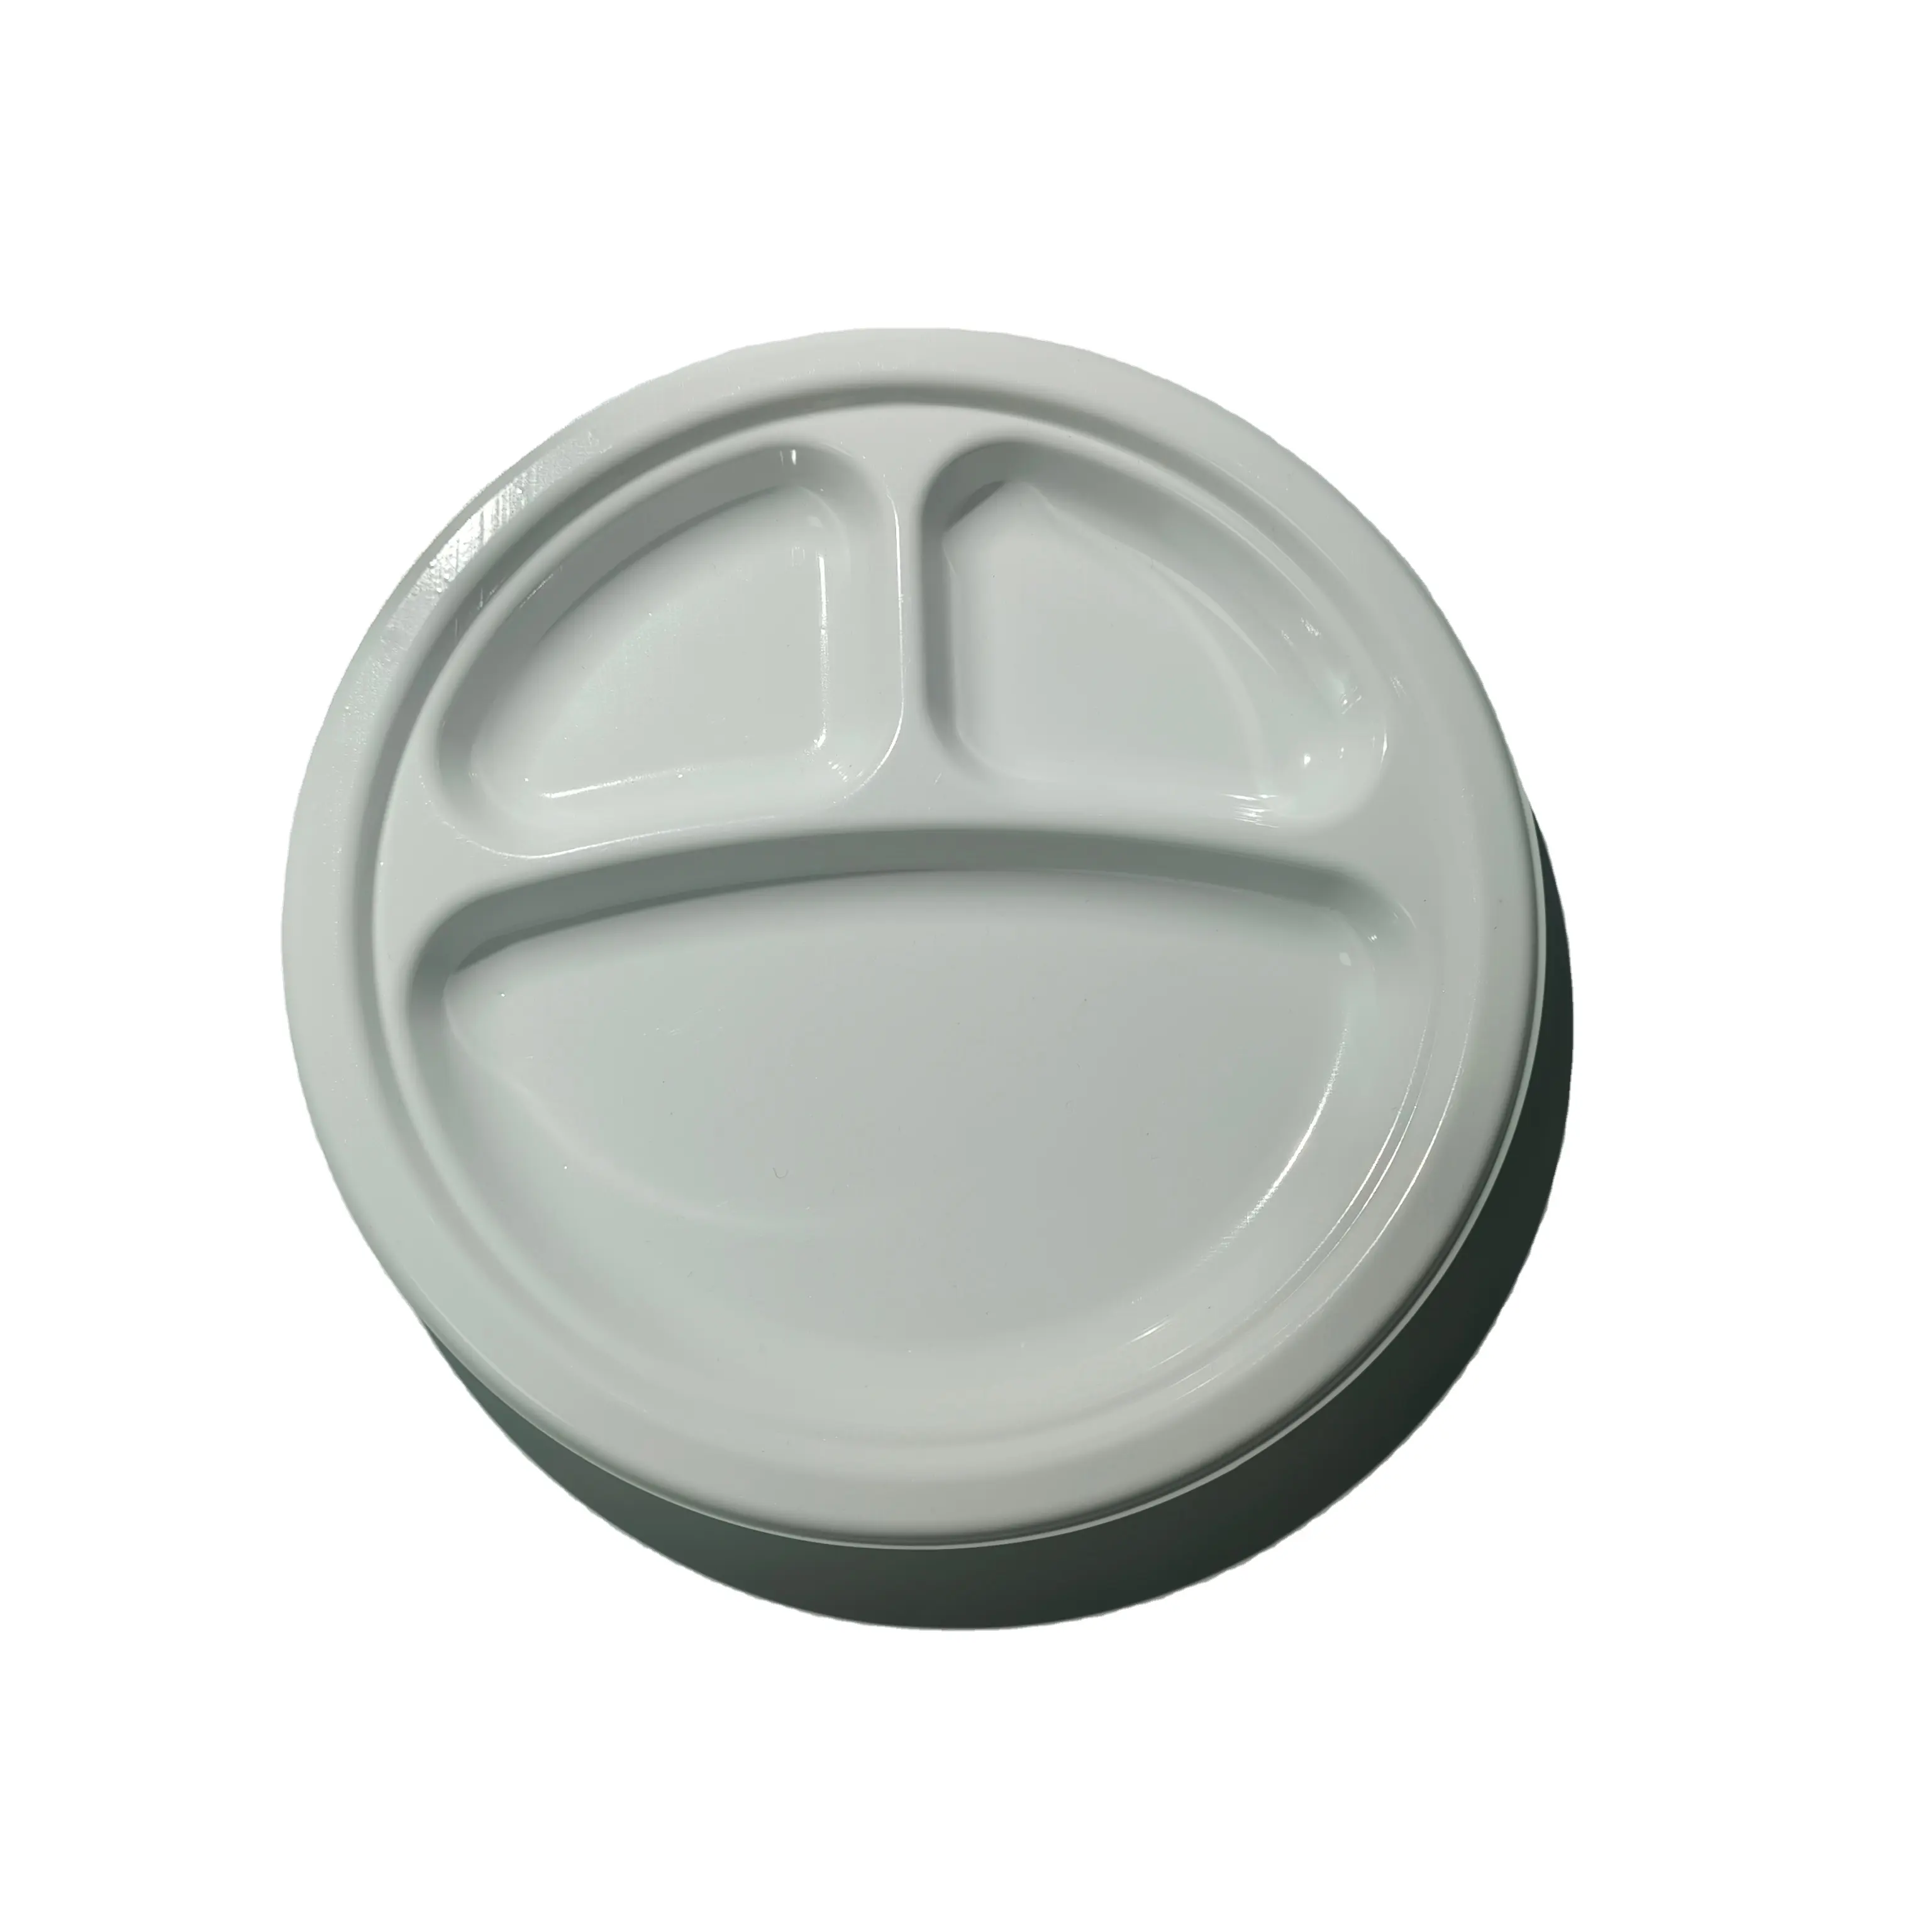 Personalización de 7 pulgadas plato blanco de plástico 3 compartimentos bandeja de comida de frutas y verduras desechable para suministro de supermercado